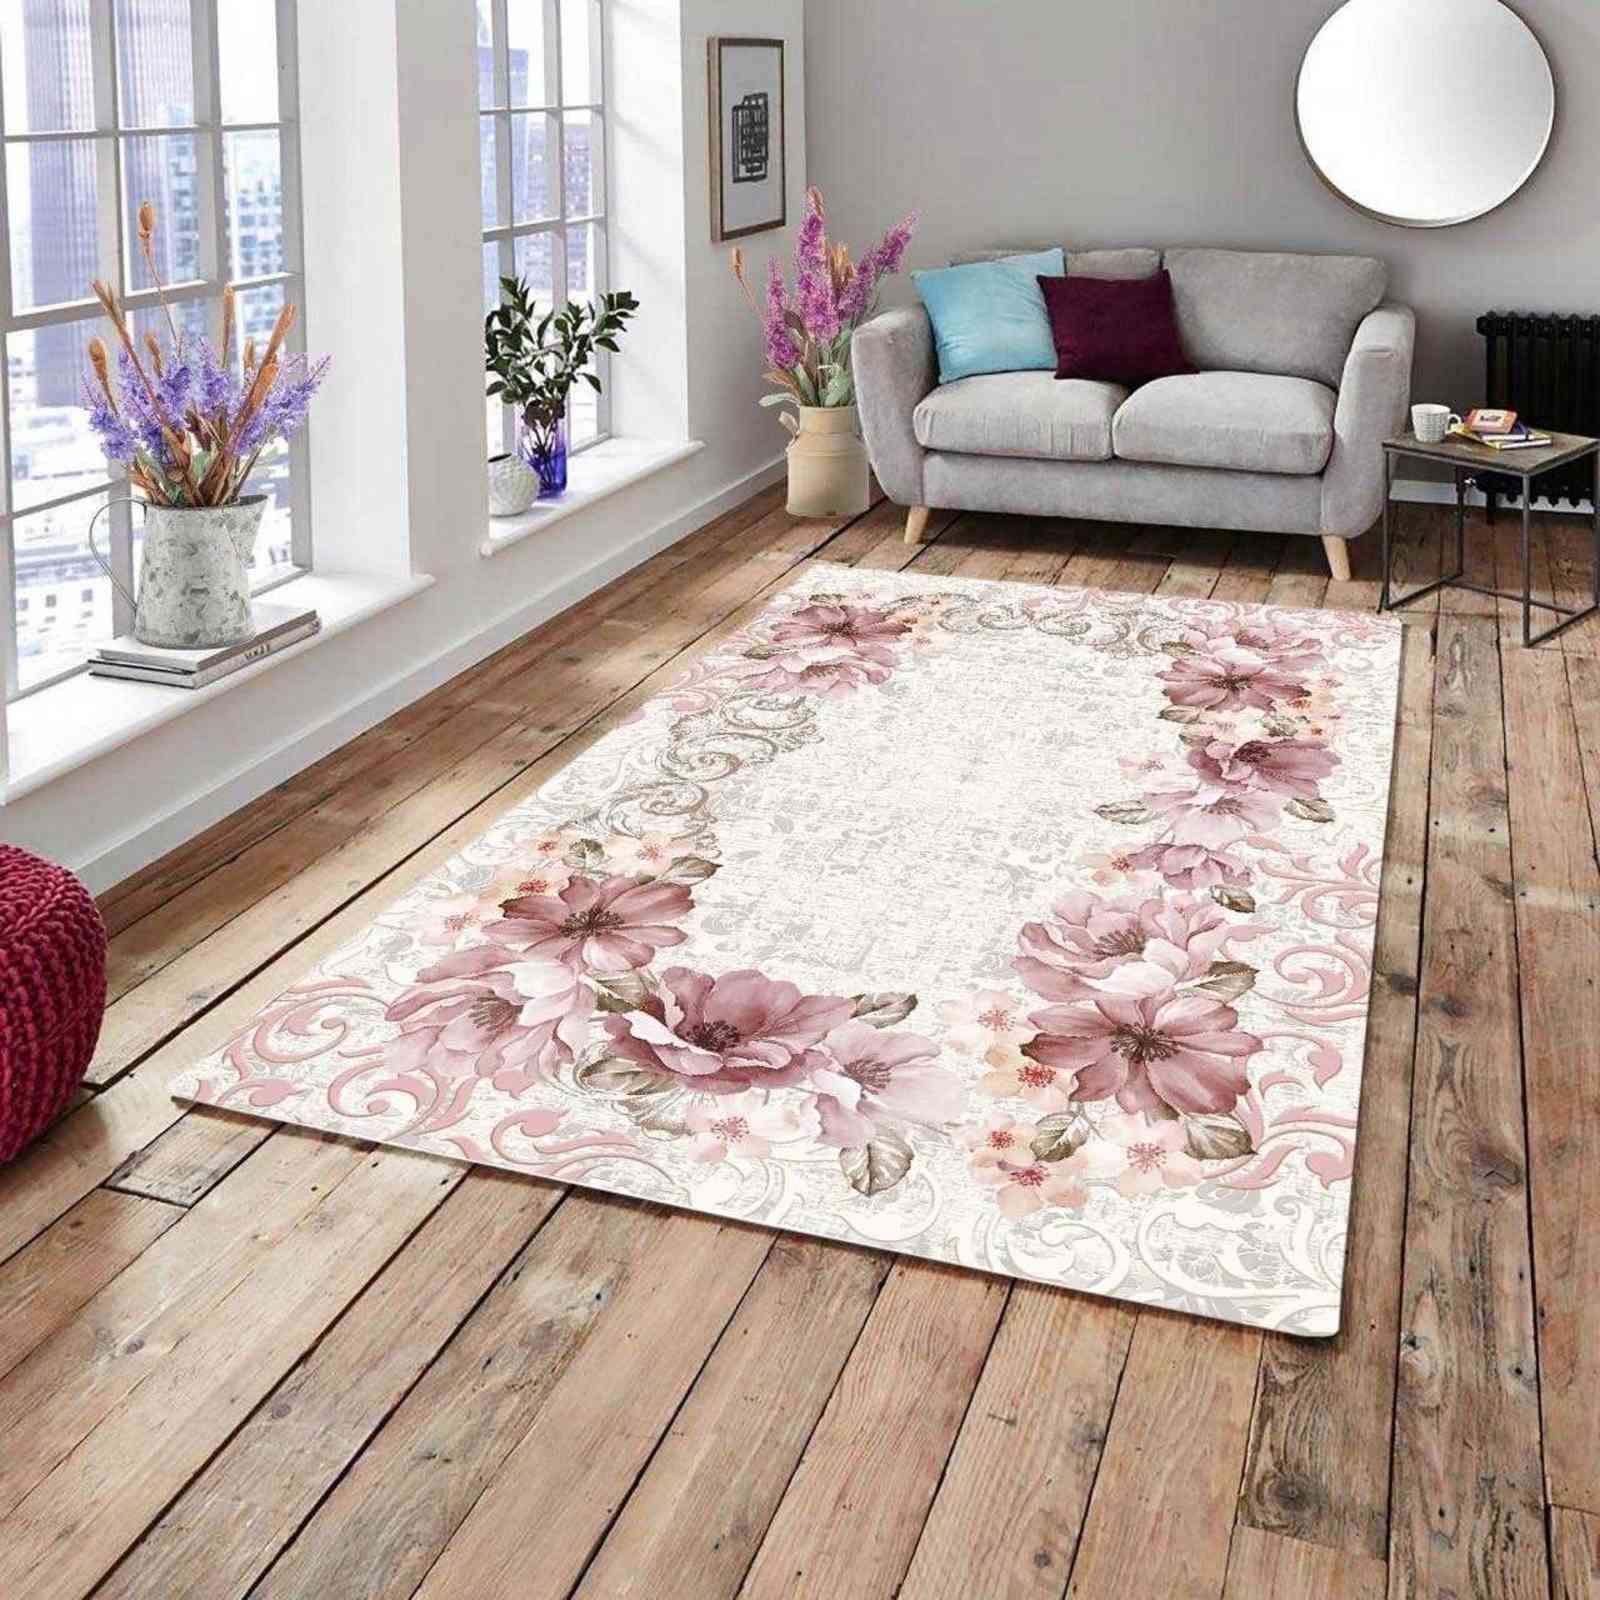 Gerbera 3988 Elastic Carpet Cover